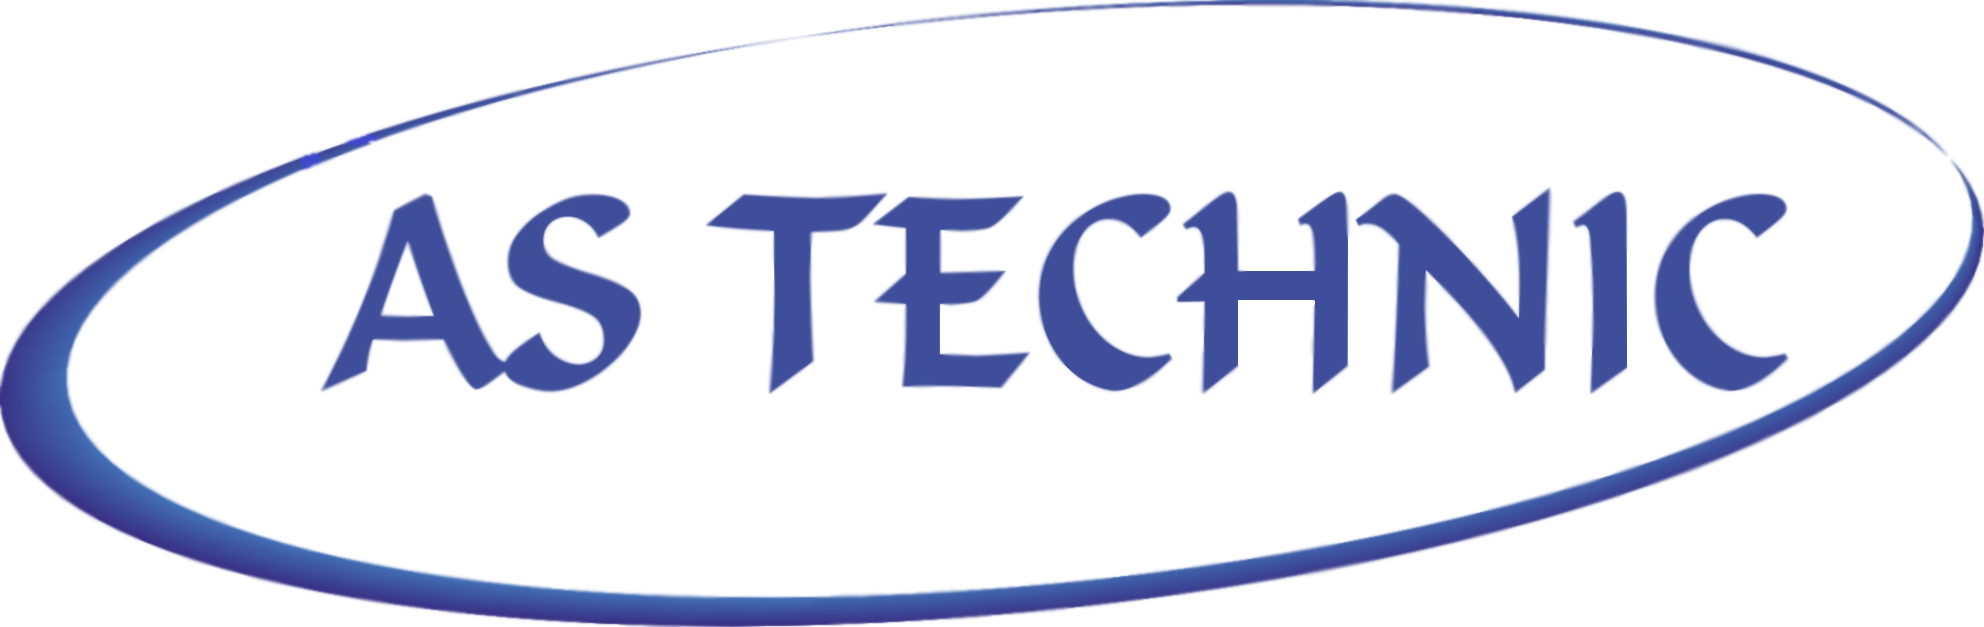 AS-TECHNIC - www.as-technic.pl - Usługi przemysłowe, Bramy garażowe, Ogrodzenia frontowe i przemysłowe,  Okna i drzwi, Usługi montażowe